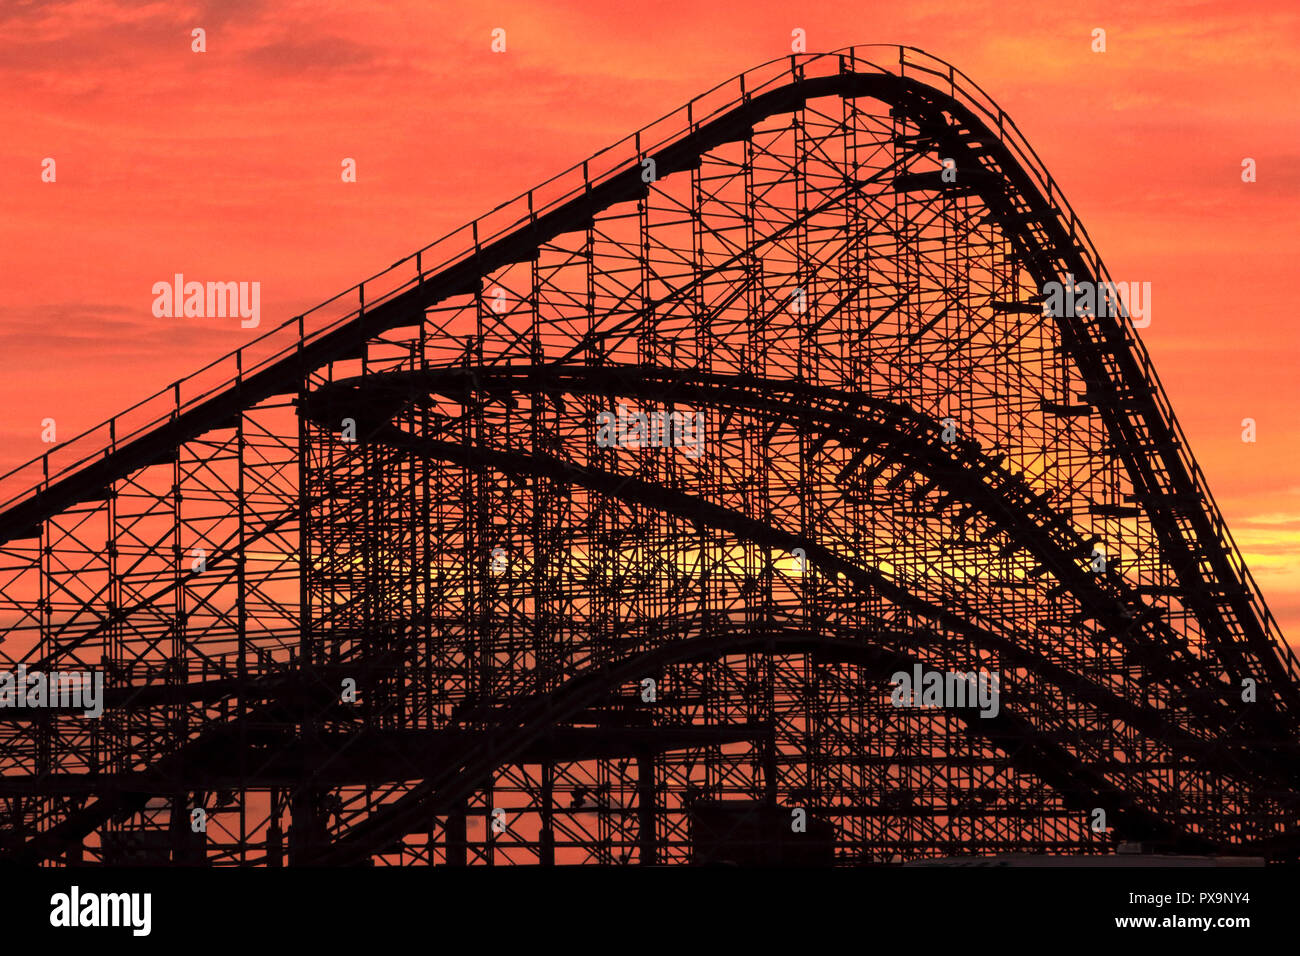 Le Grand Blanc Roller Coaster à l'aube sur la promenade à Wildwood, New Jersey, USA Banque D'Images